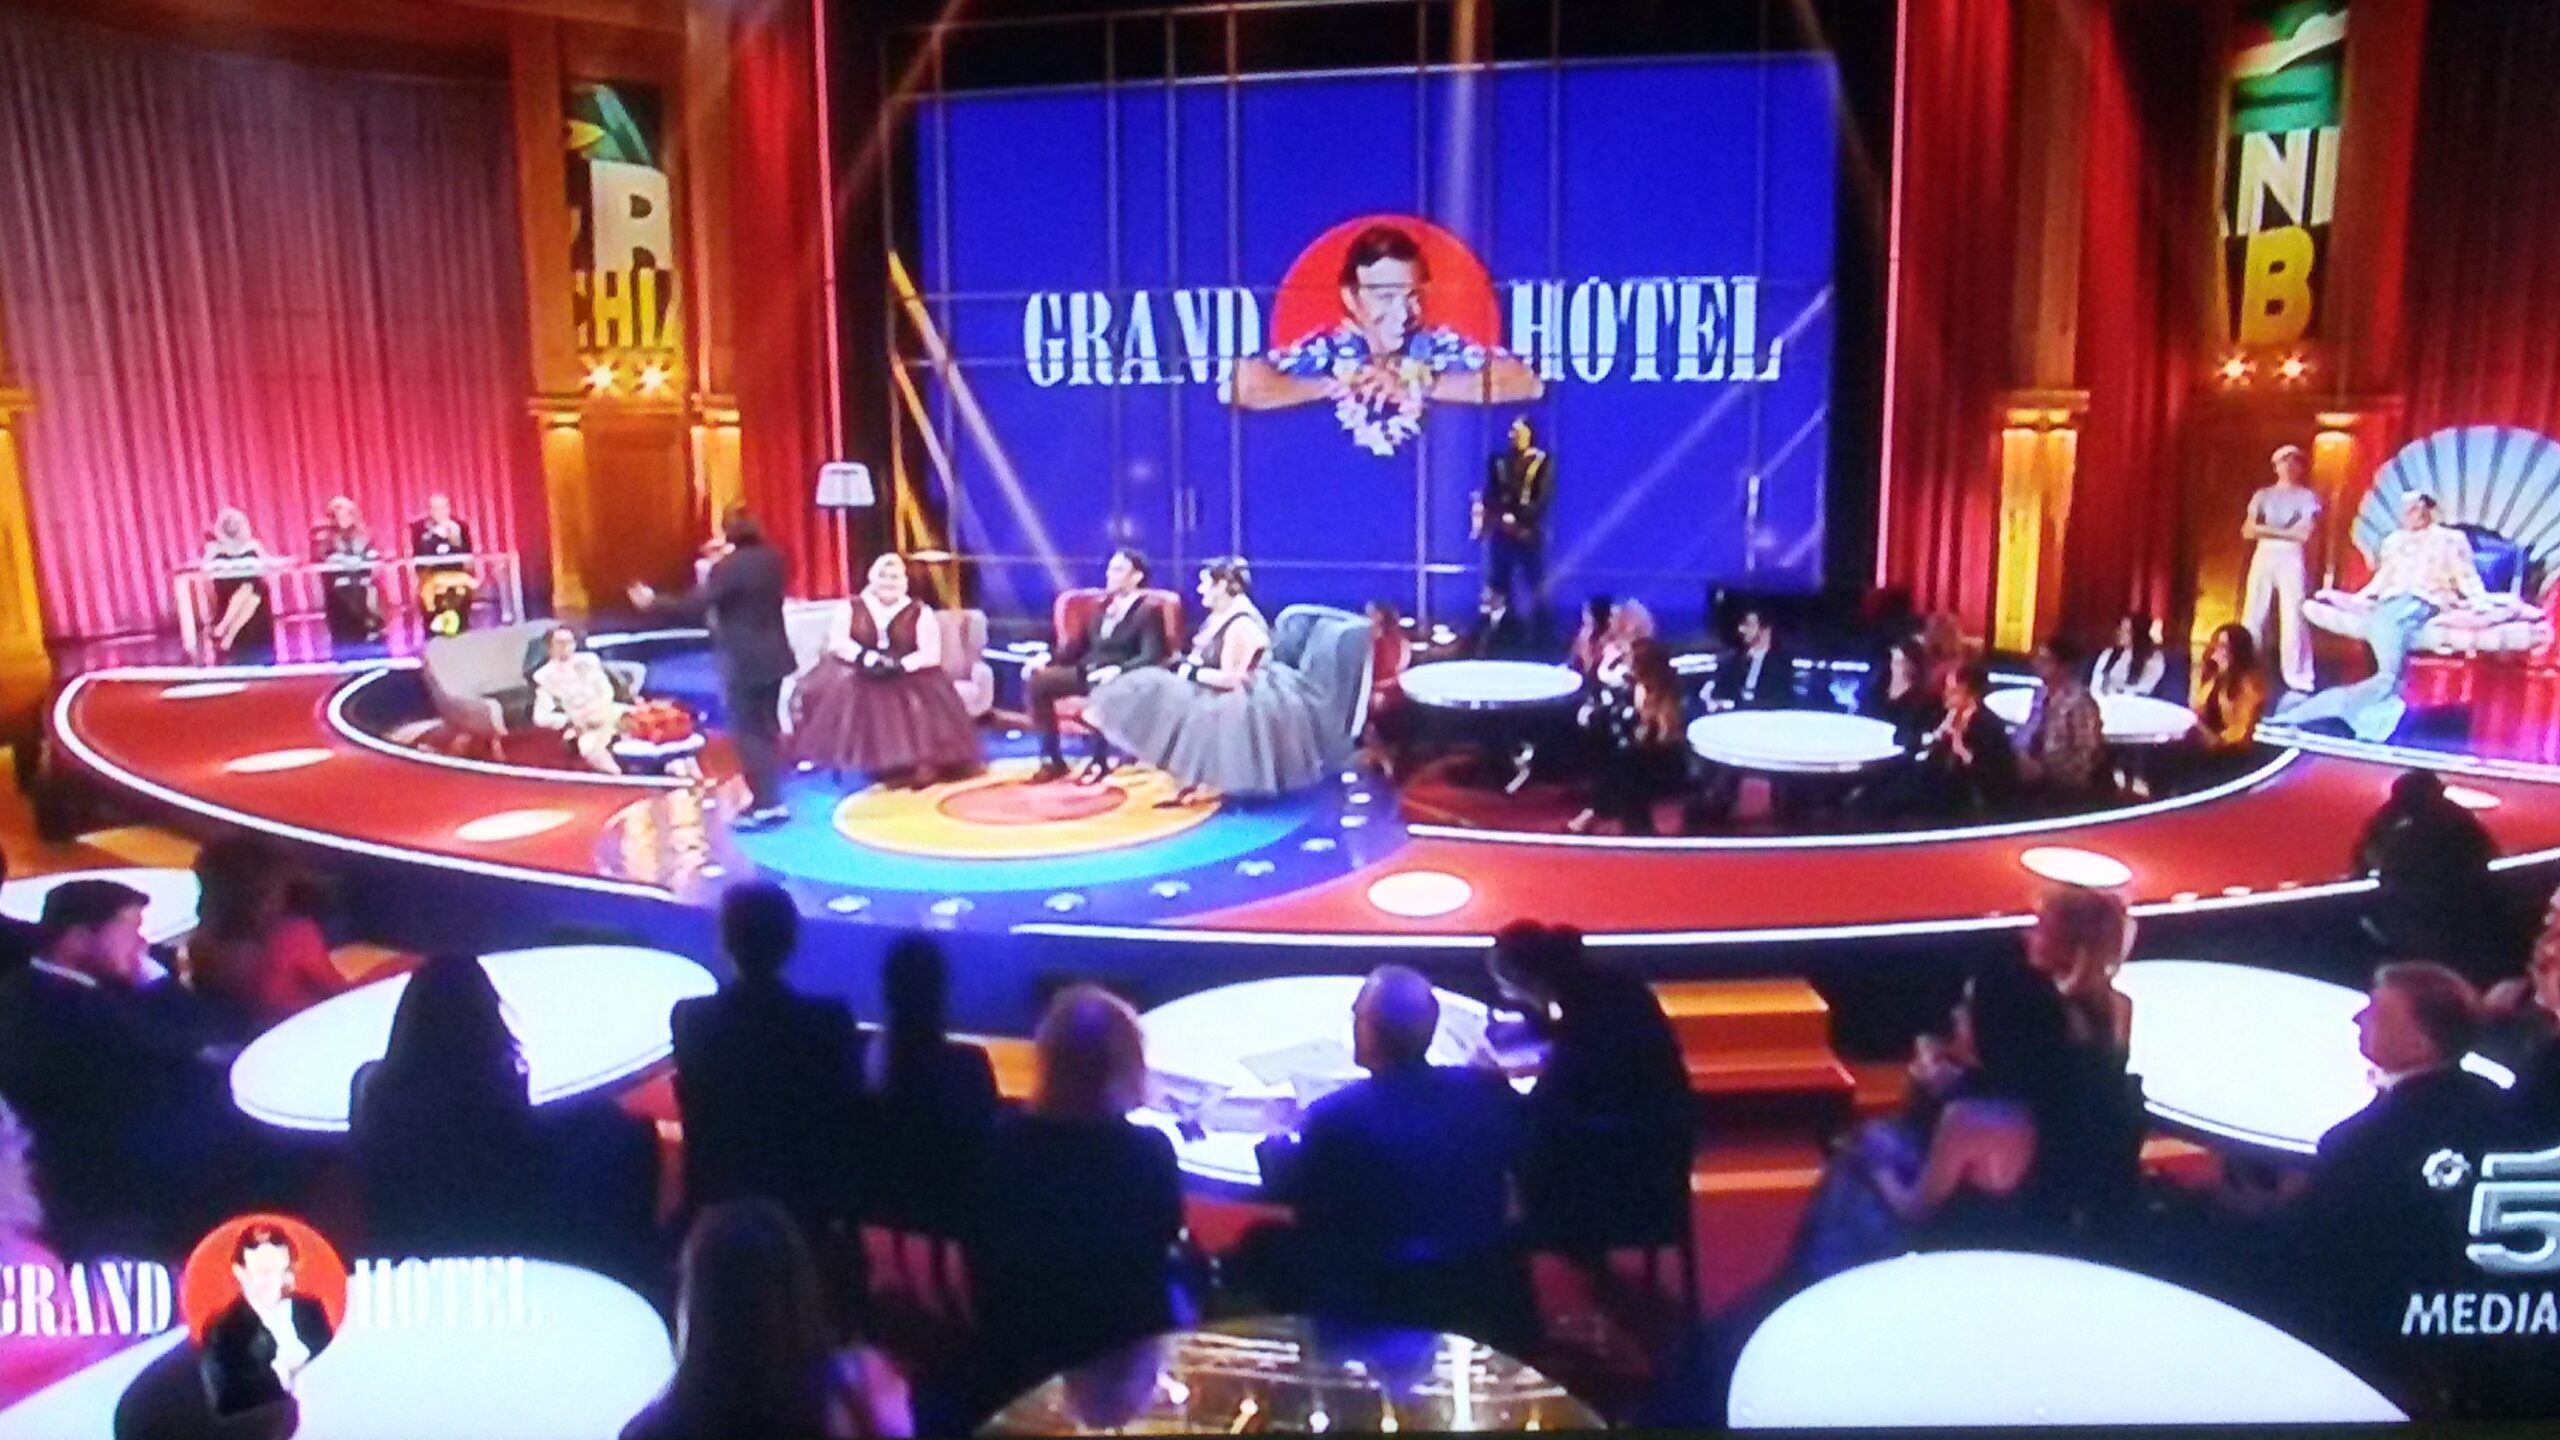 Grand Hotel Chiambretti